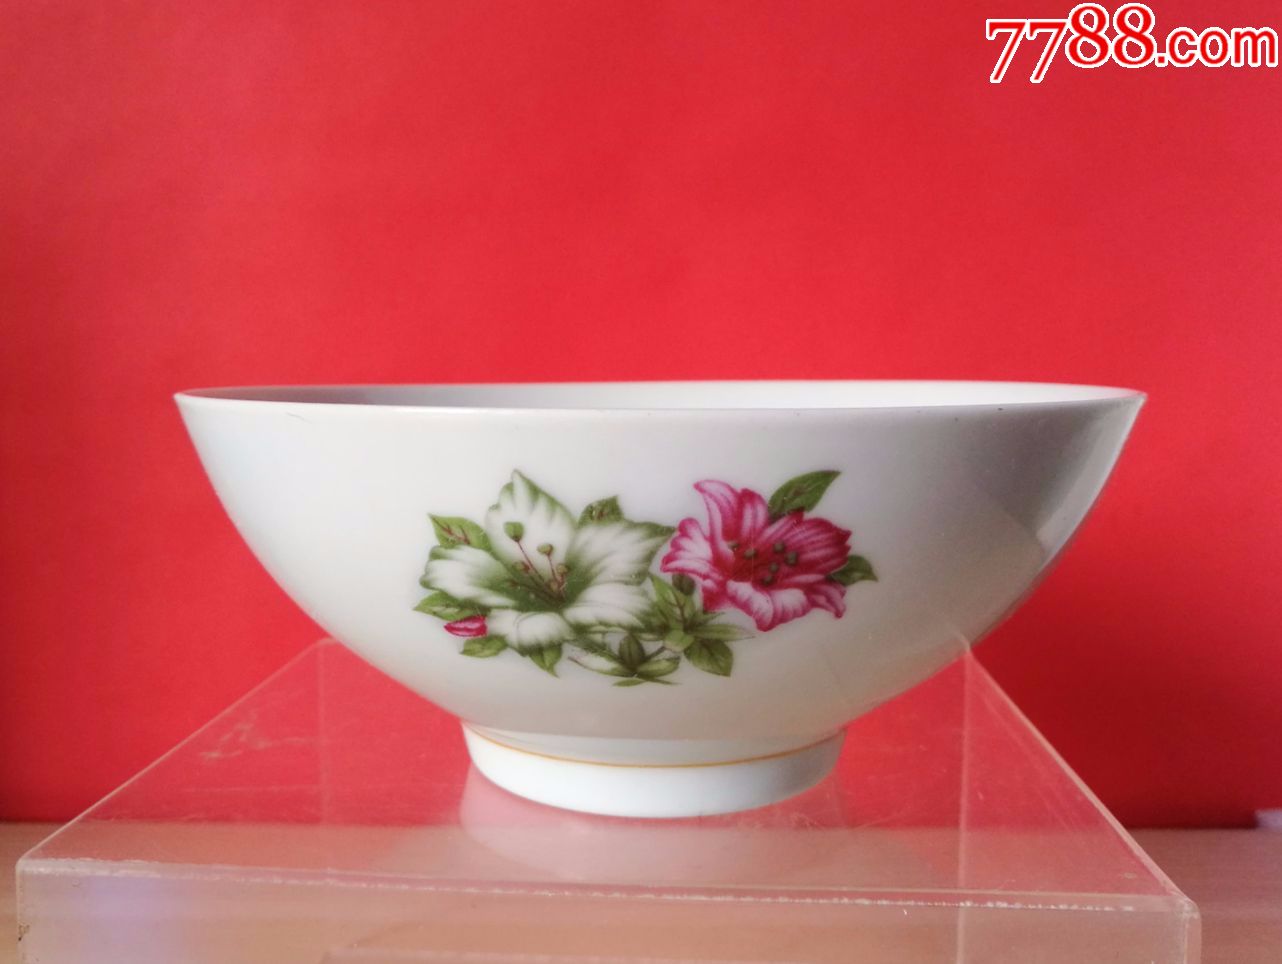 少见的"湖南醴陵"红狮款贴花杜鹃花卉纹薄胎碗